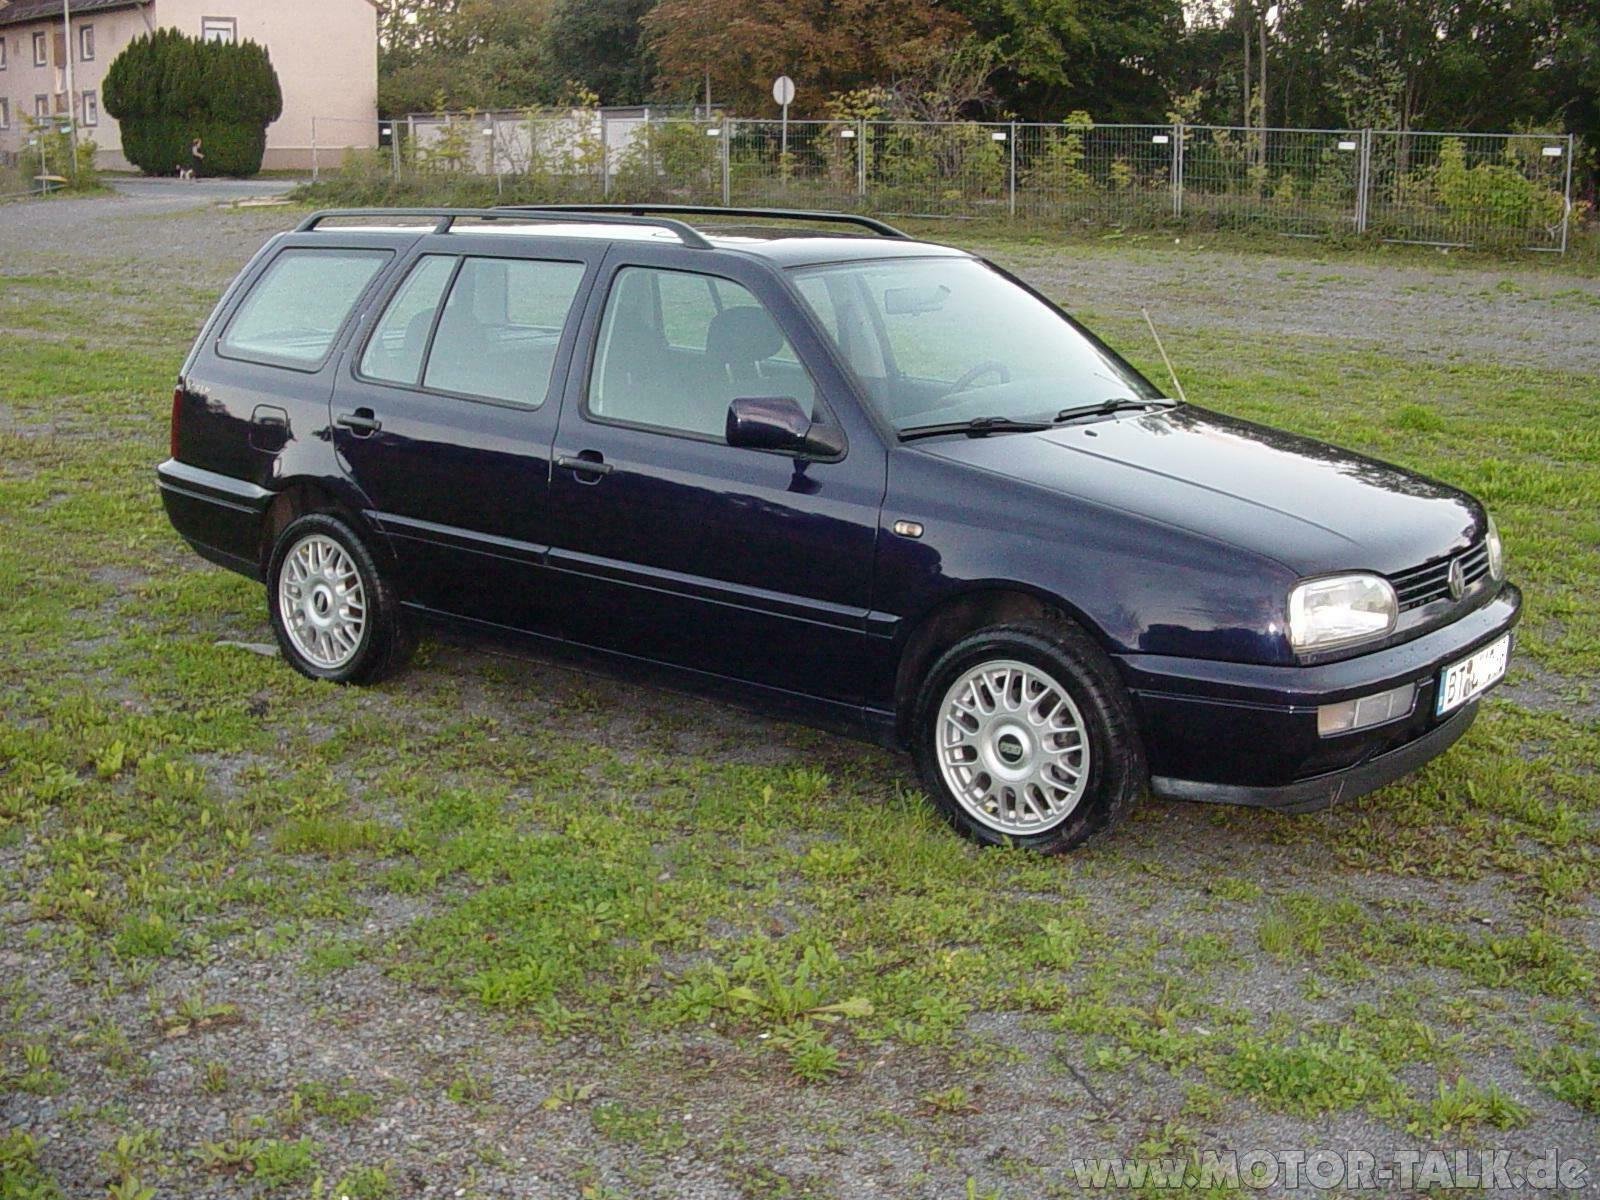 Гольф 3 минск. VW Golf 3 универсал. Volkswagen Golf 3 variant универсал. Фольксваген гольф универсал 1996. Volkswagen Golf универсал 1998.